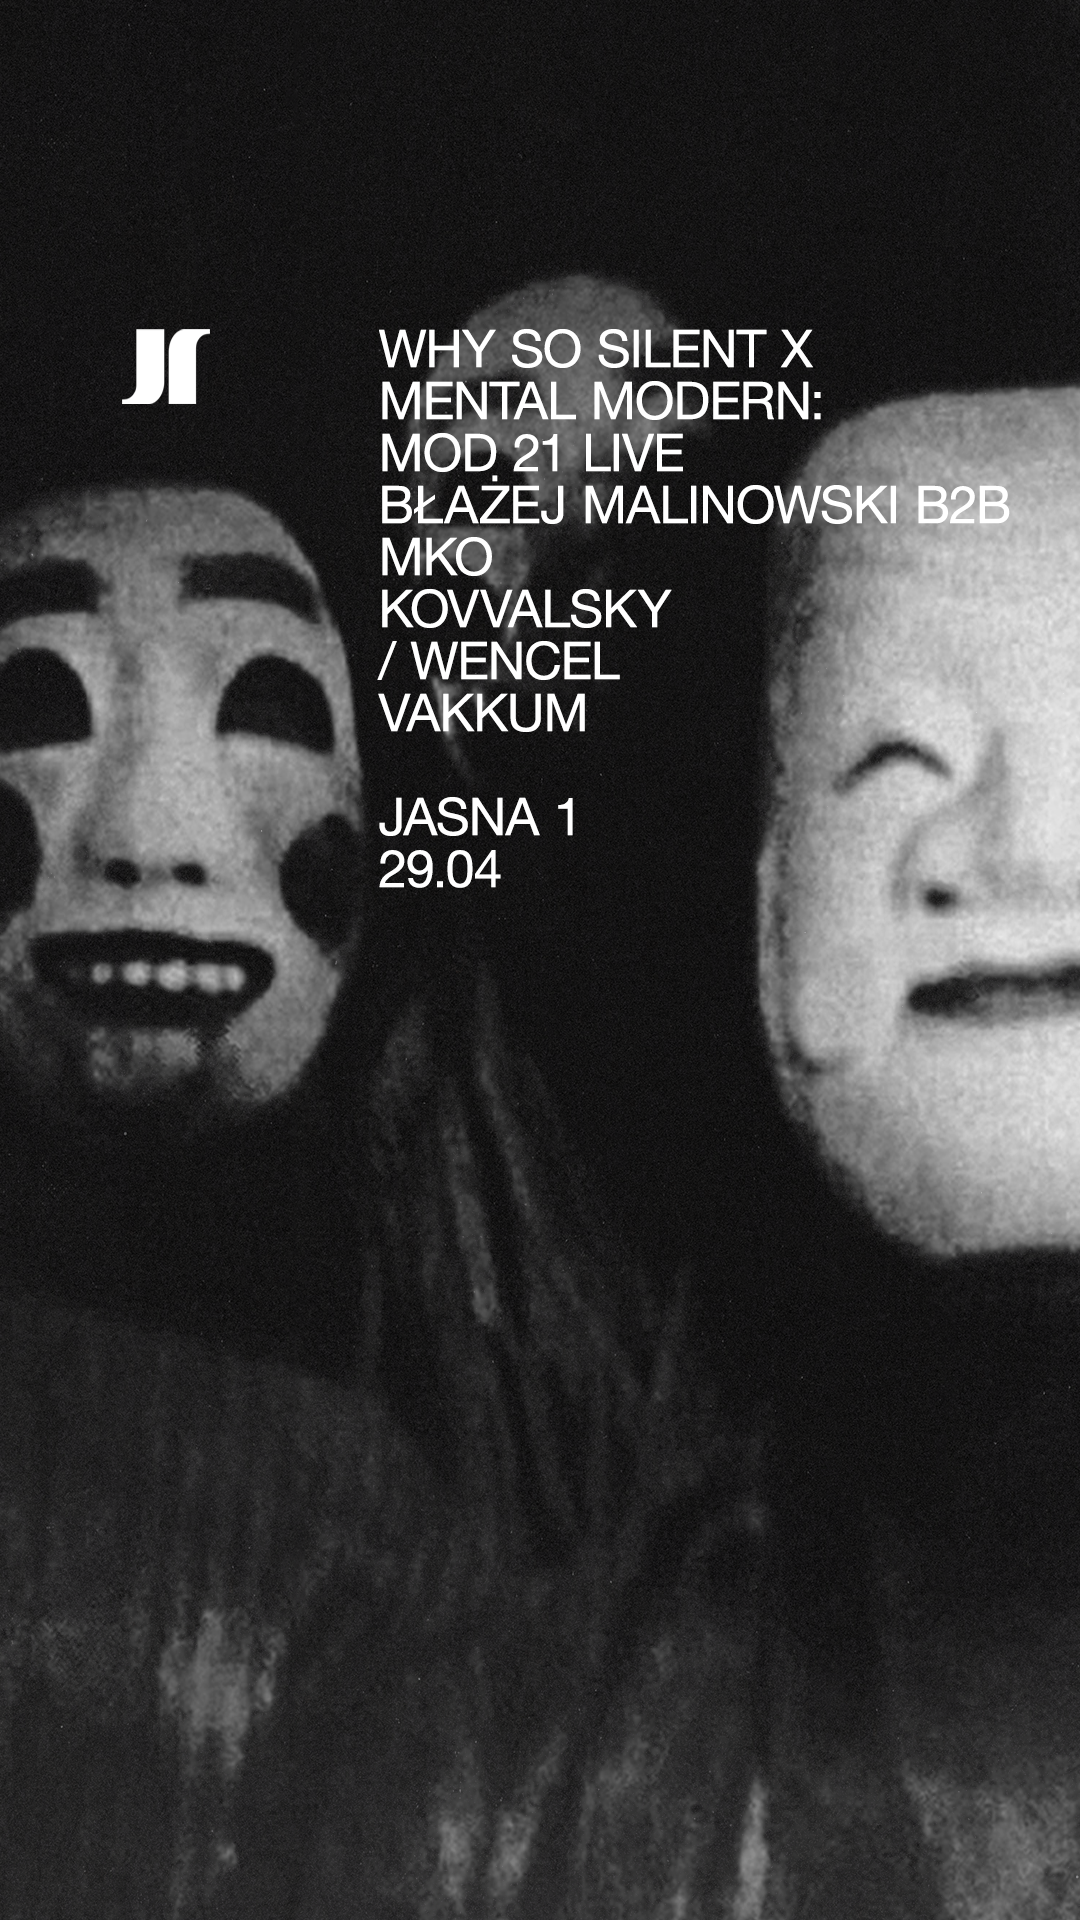 Why So Silent #44 - Mod21 LIVE, Błażej Malinowski b2b MKO, Kovvalsky / Wencel, vakkum - Página frontal